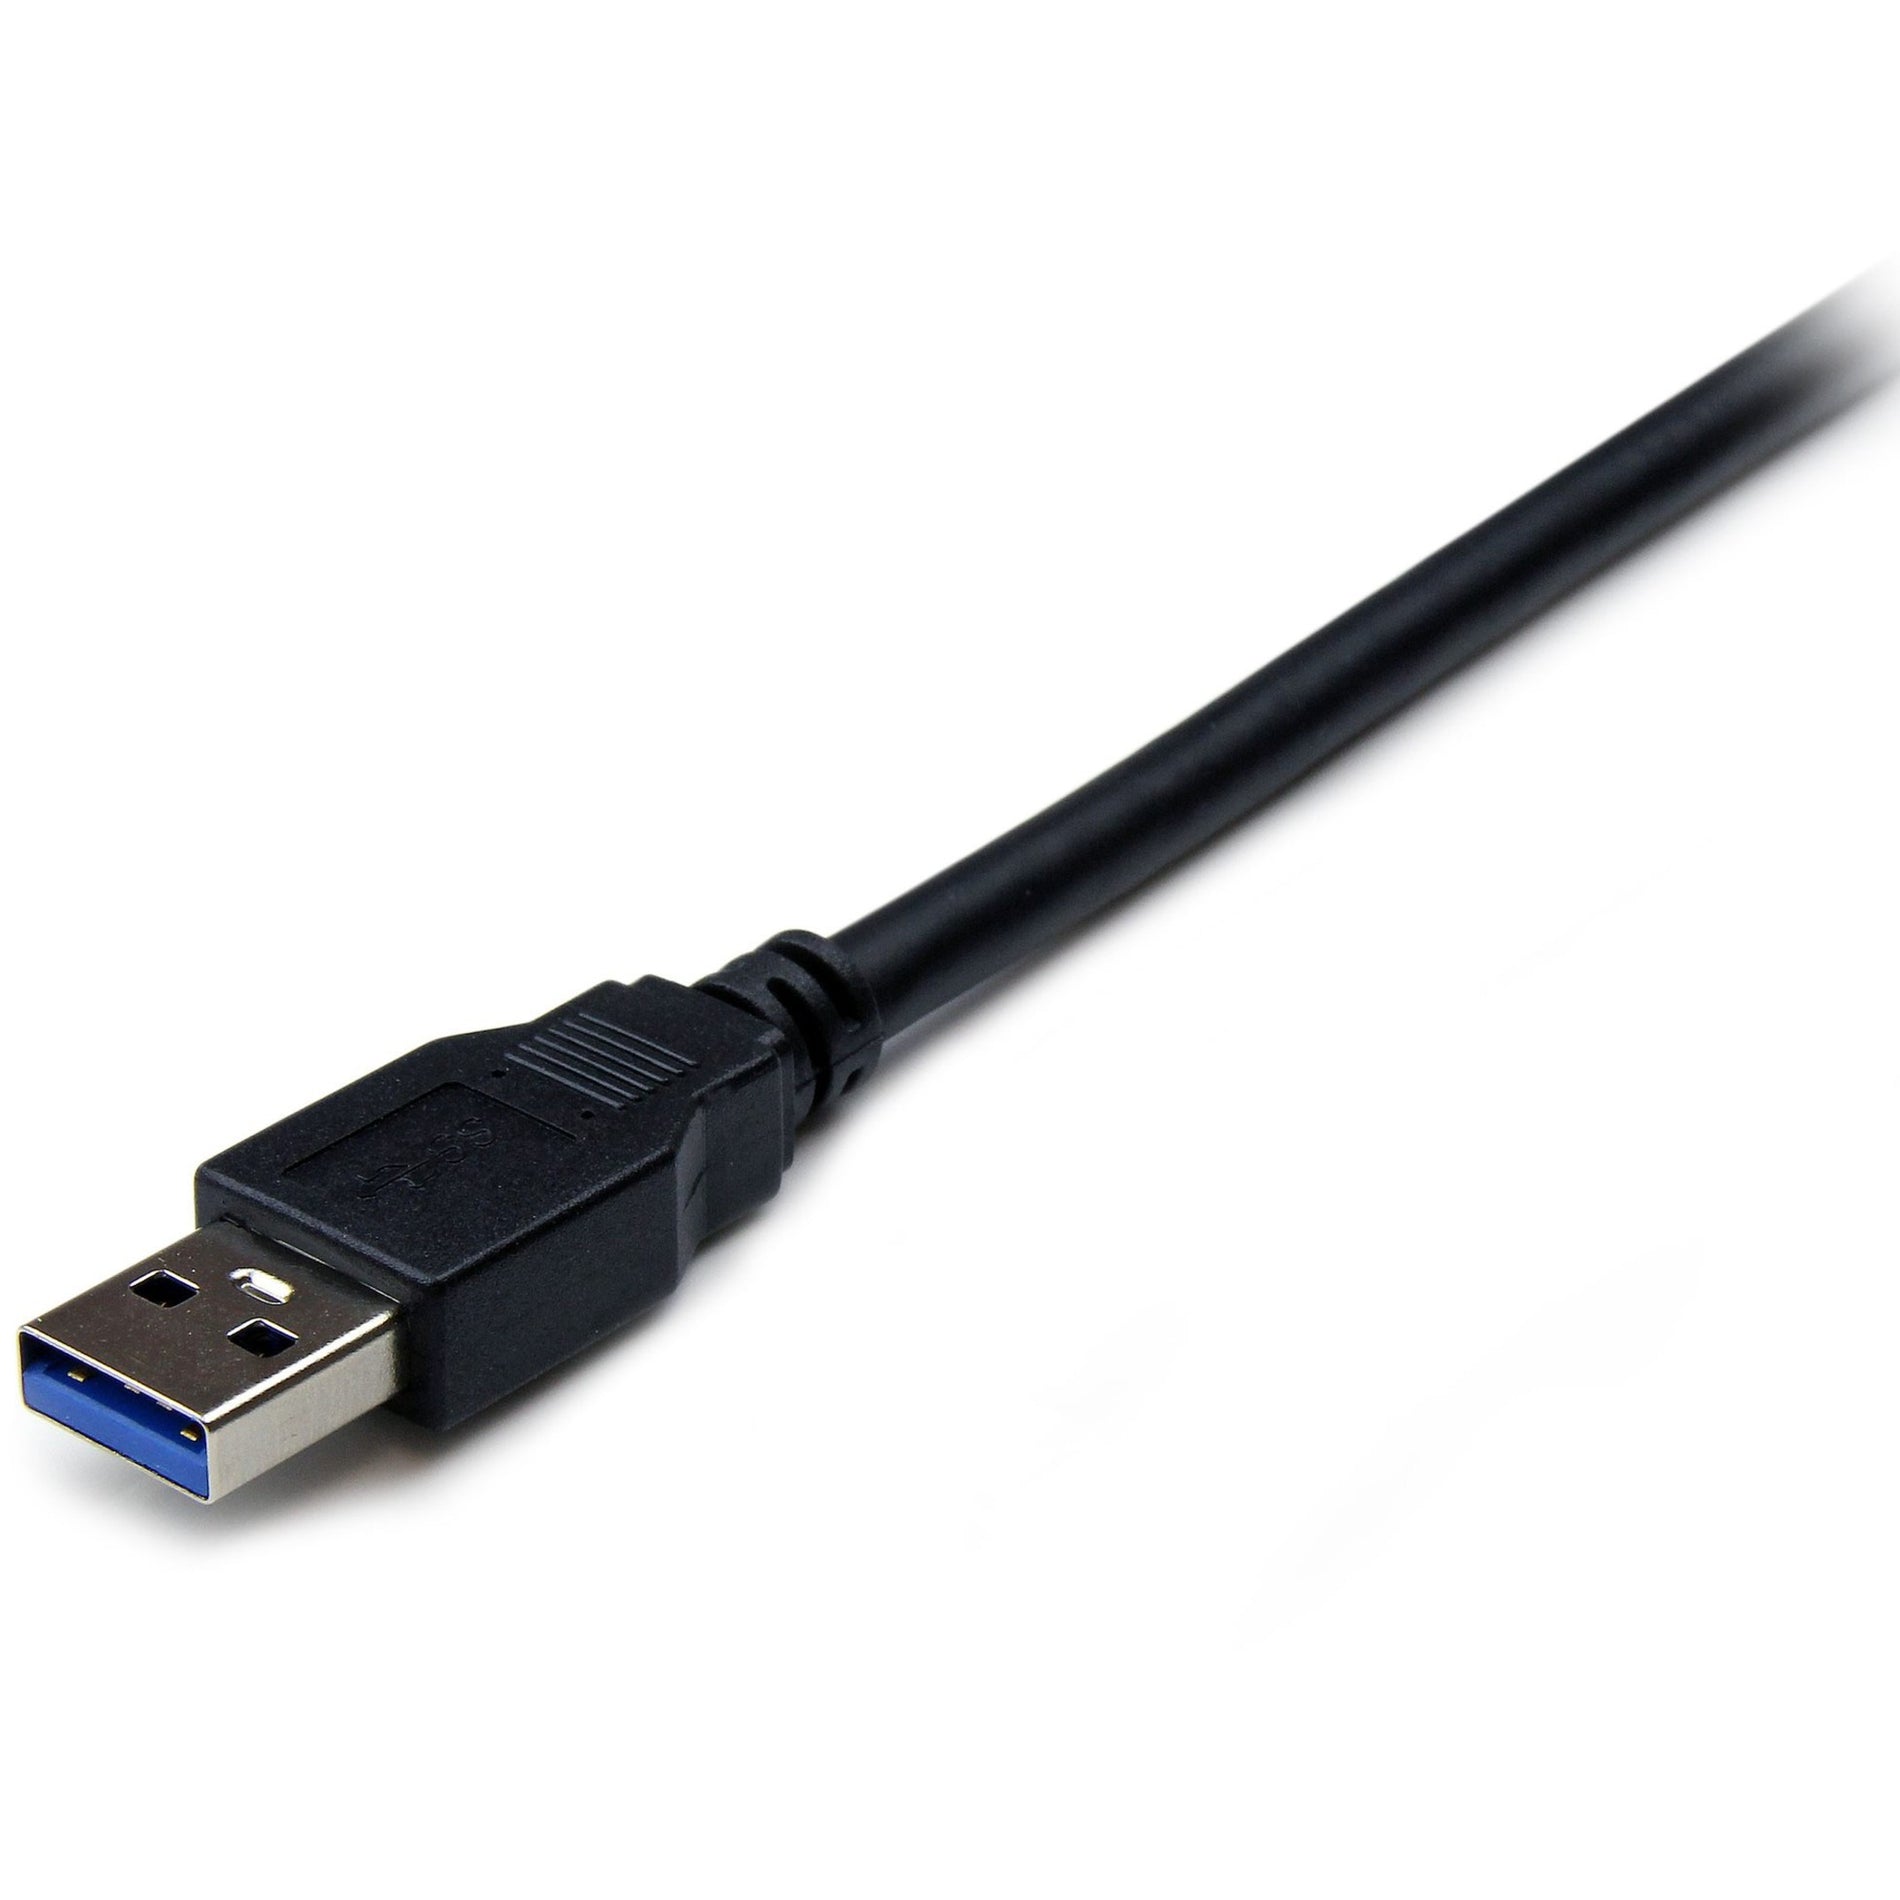 6 ft Schwarzes SuperSpeed USB 3.0 Verlängerungskabel A auf A - M/F Hochgeschwindigkeits-Datenübertragung lebenslange Garantie